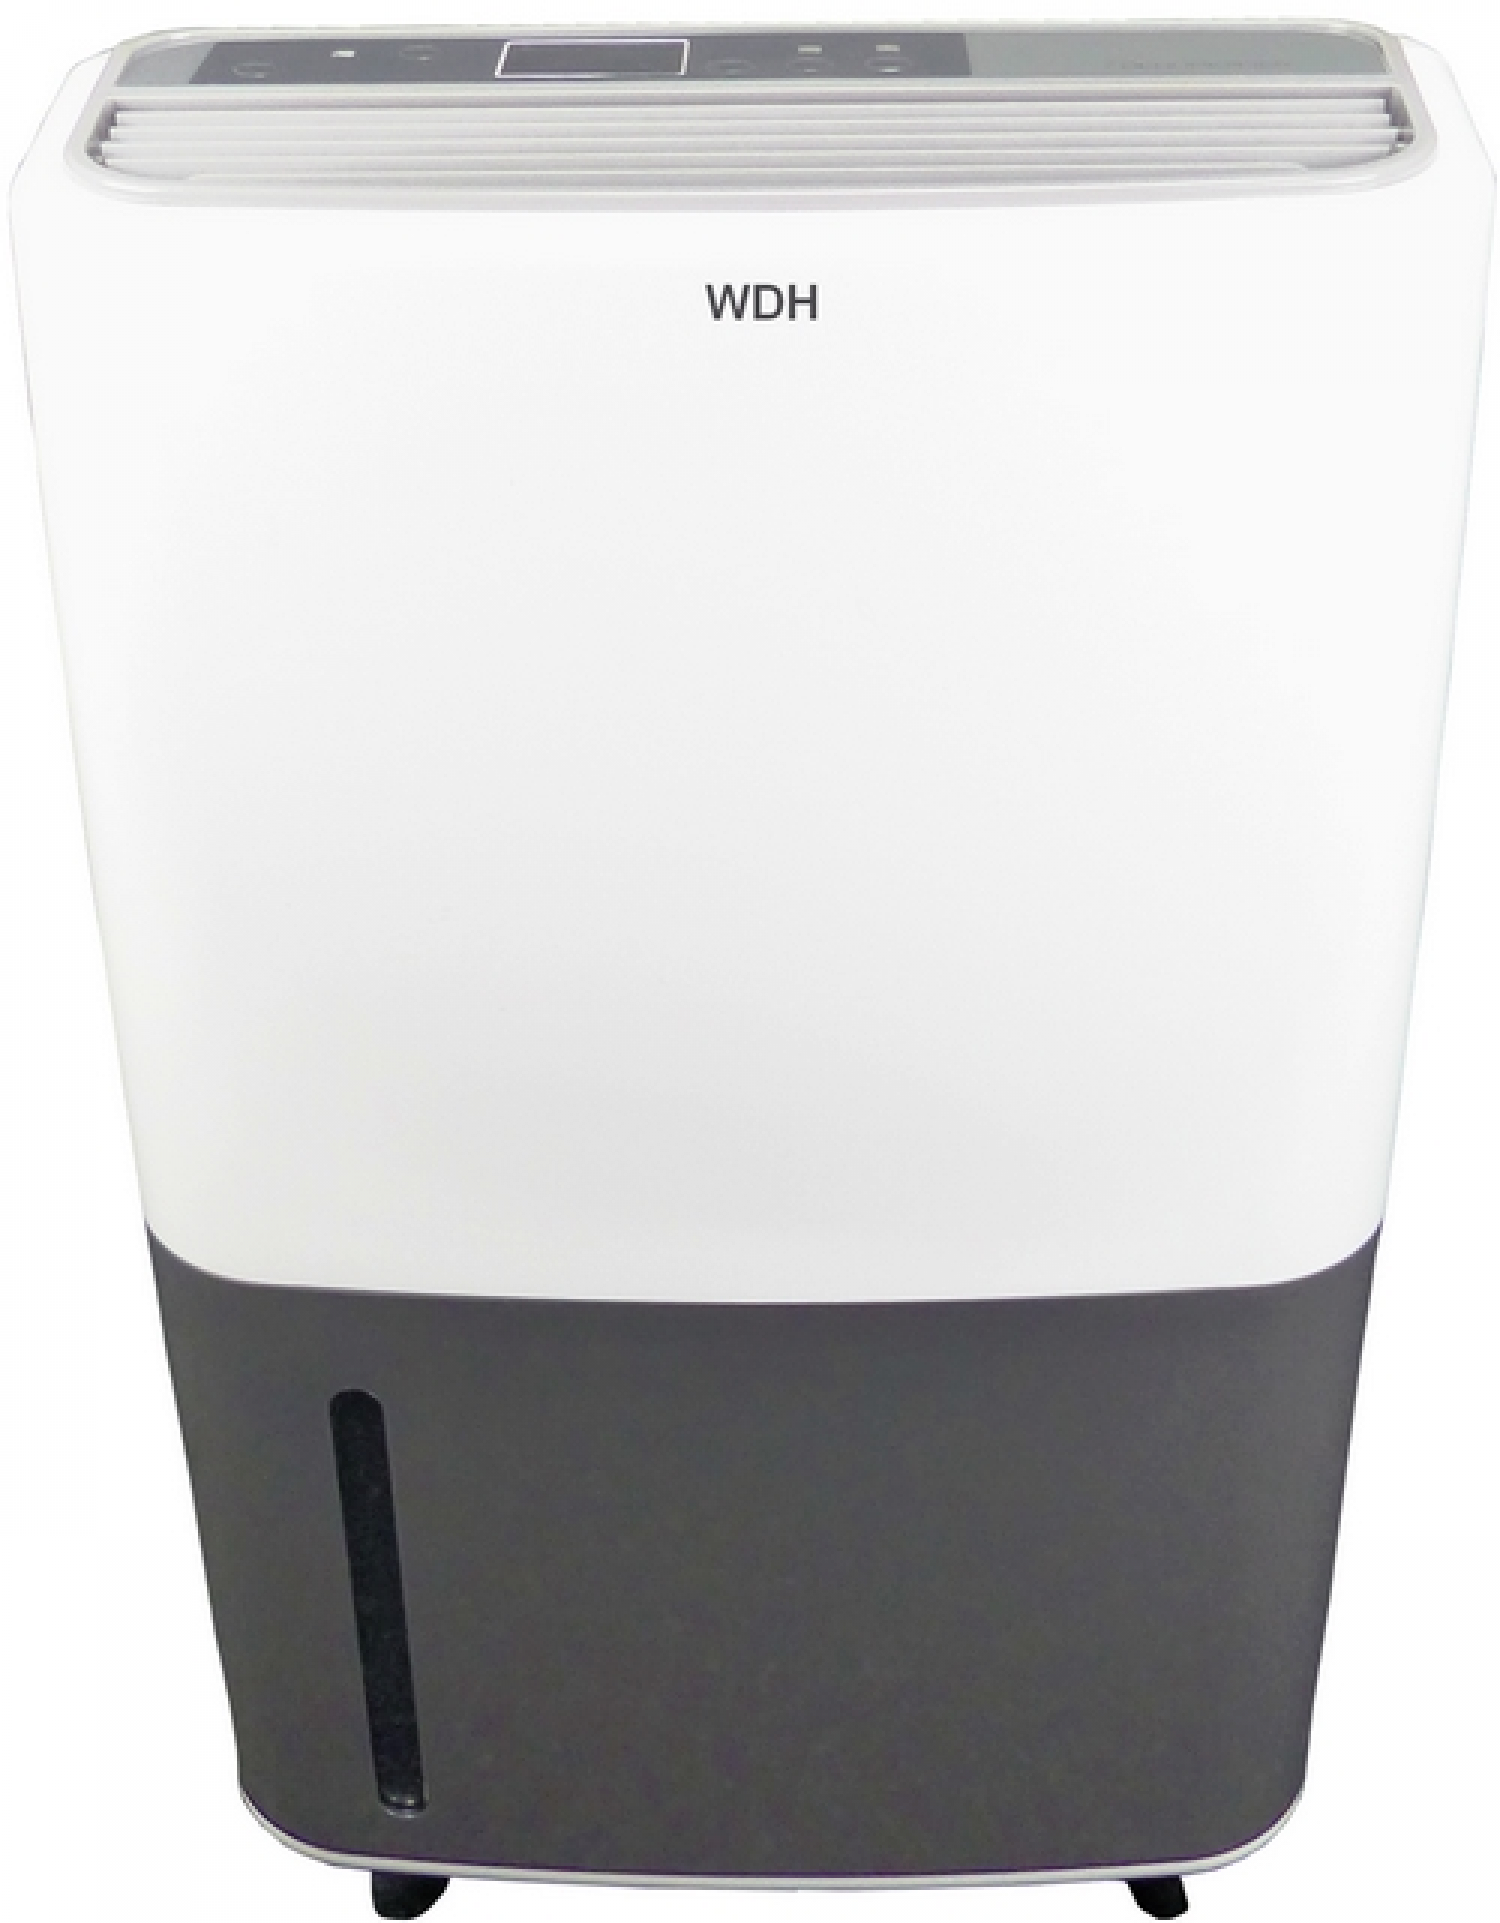 m²) WDH Entfeuchterleistung: 65 Luftentfeuchter (420 1 Raumgröße: Liter/Std., WDH-725DG Watt, Luftentfeuchter White